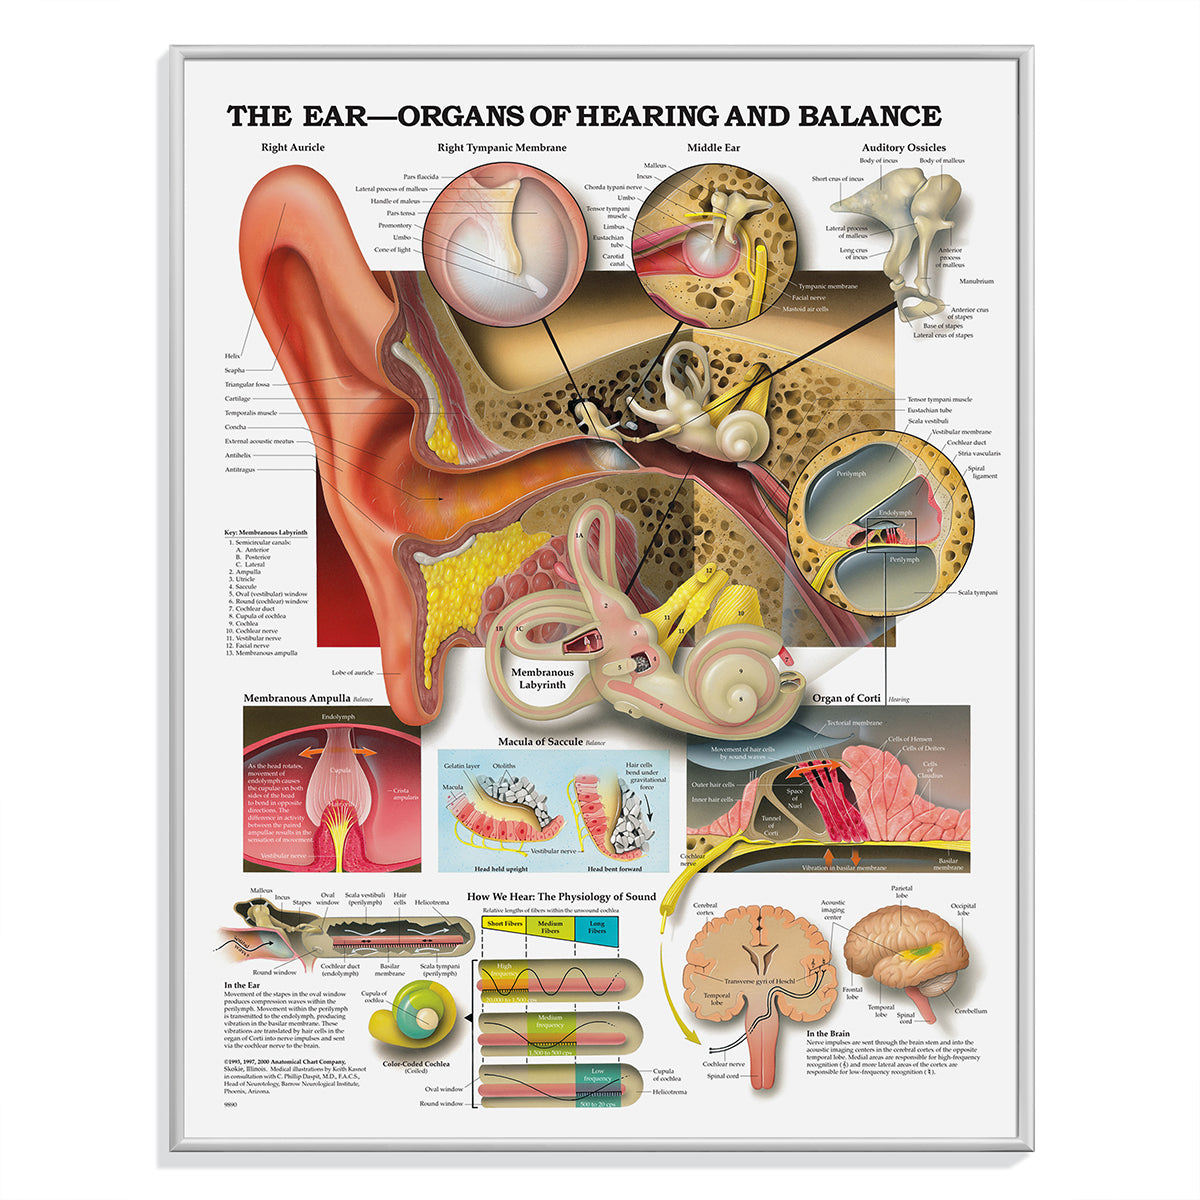 Plakater om sanseorganerne; øjne, øre-næse-hals og huden